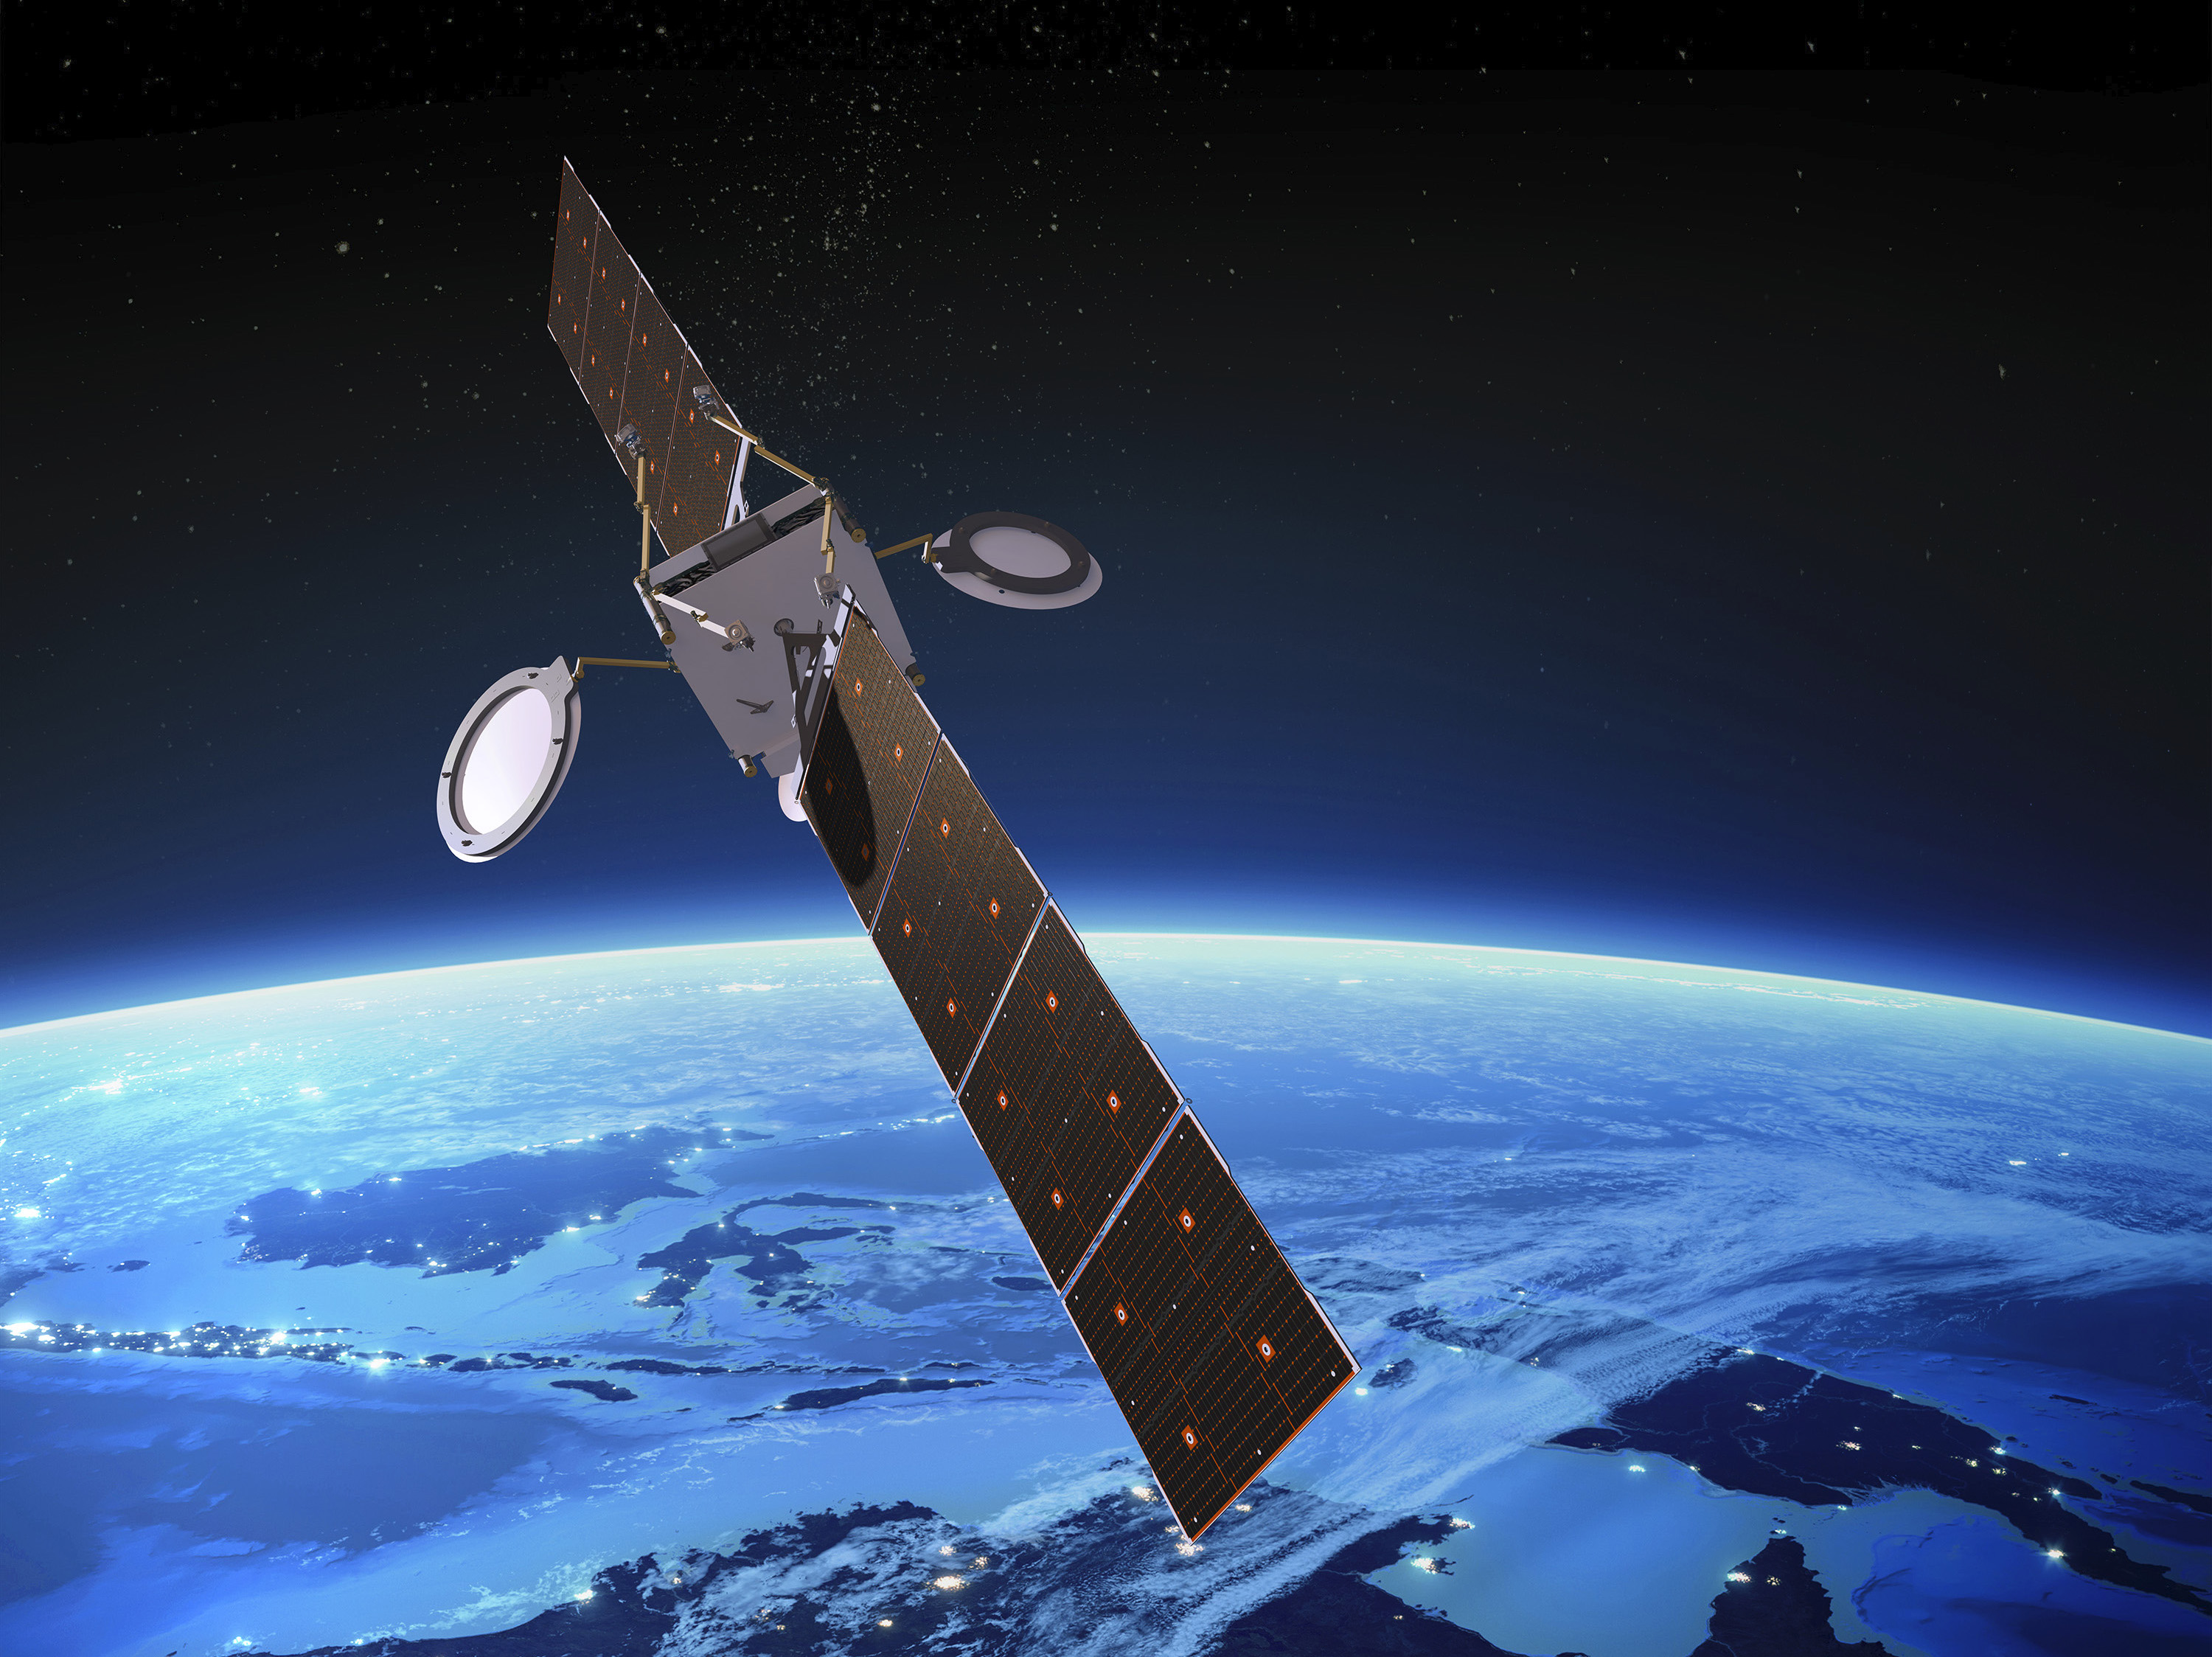 boeing unveils new spacecraft